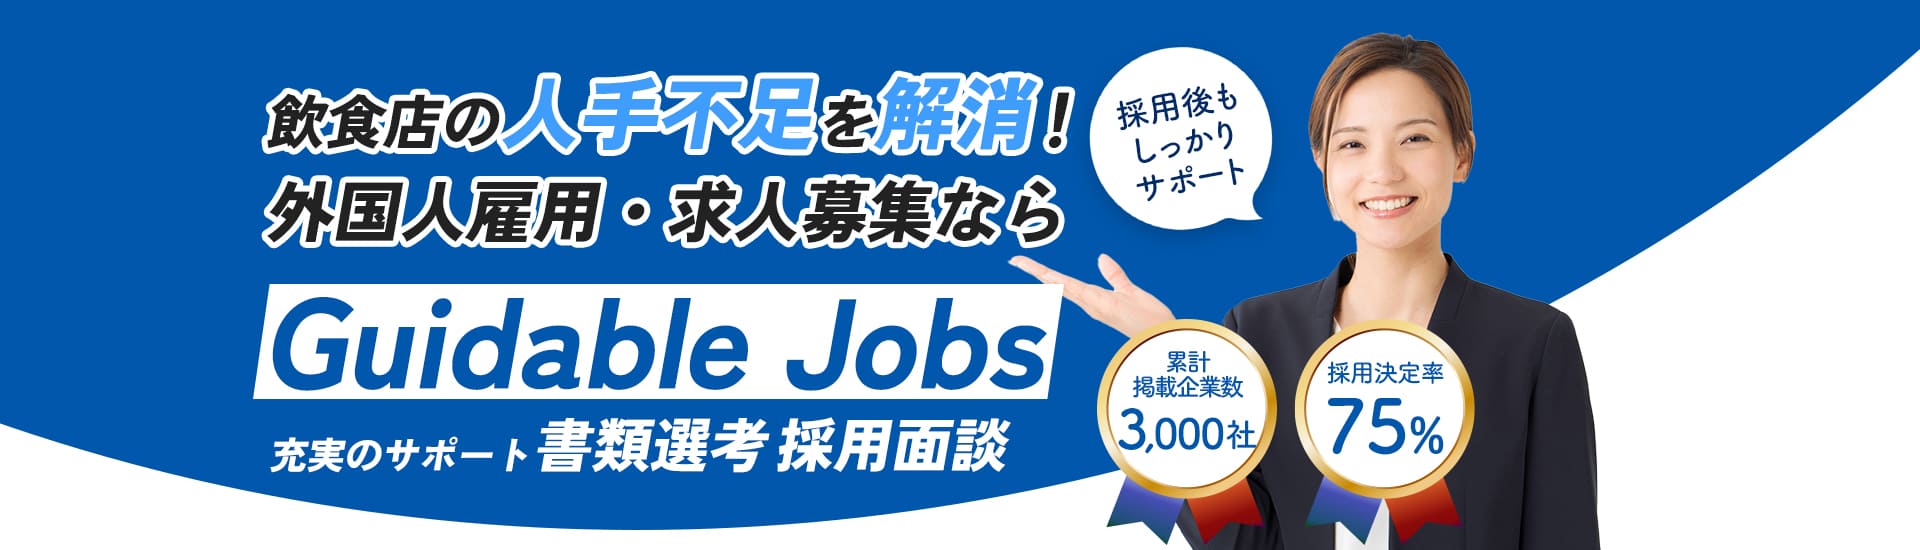 鶴岡市の求人・人材募集(正社員・アルバイト・パート・派遣)で外国人の採用をサポート